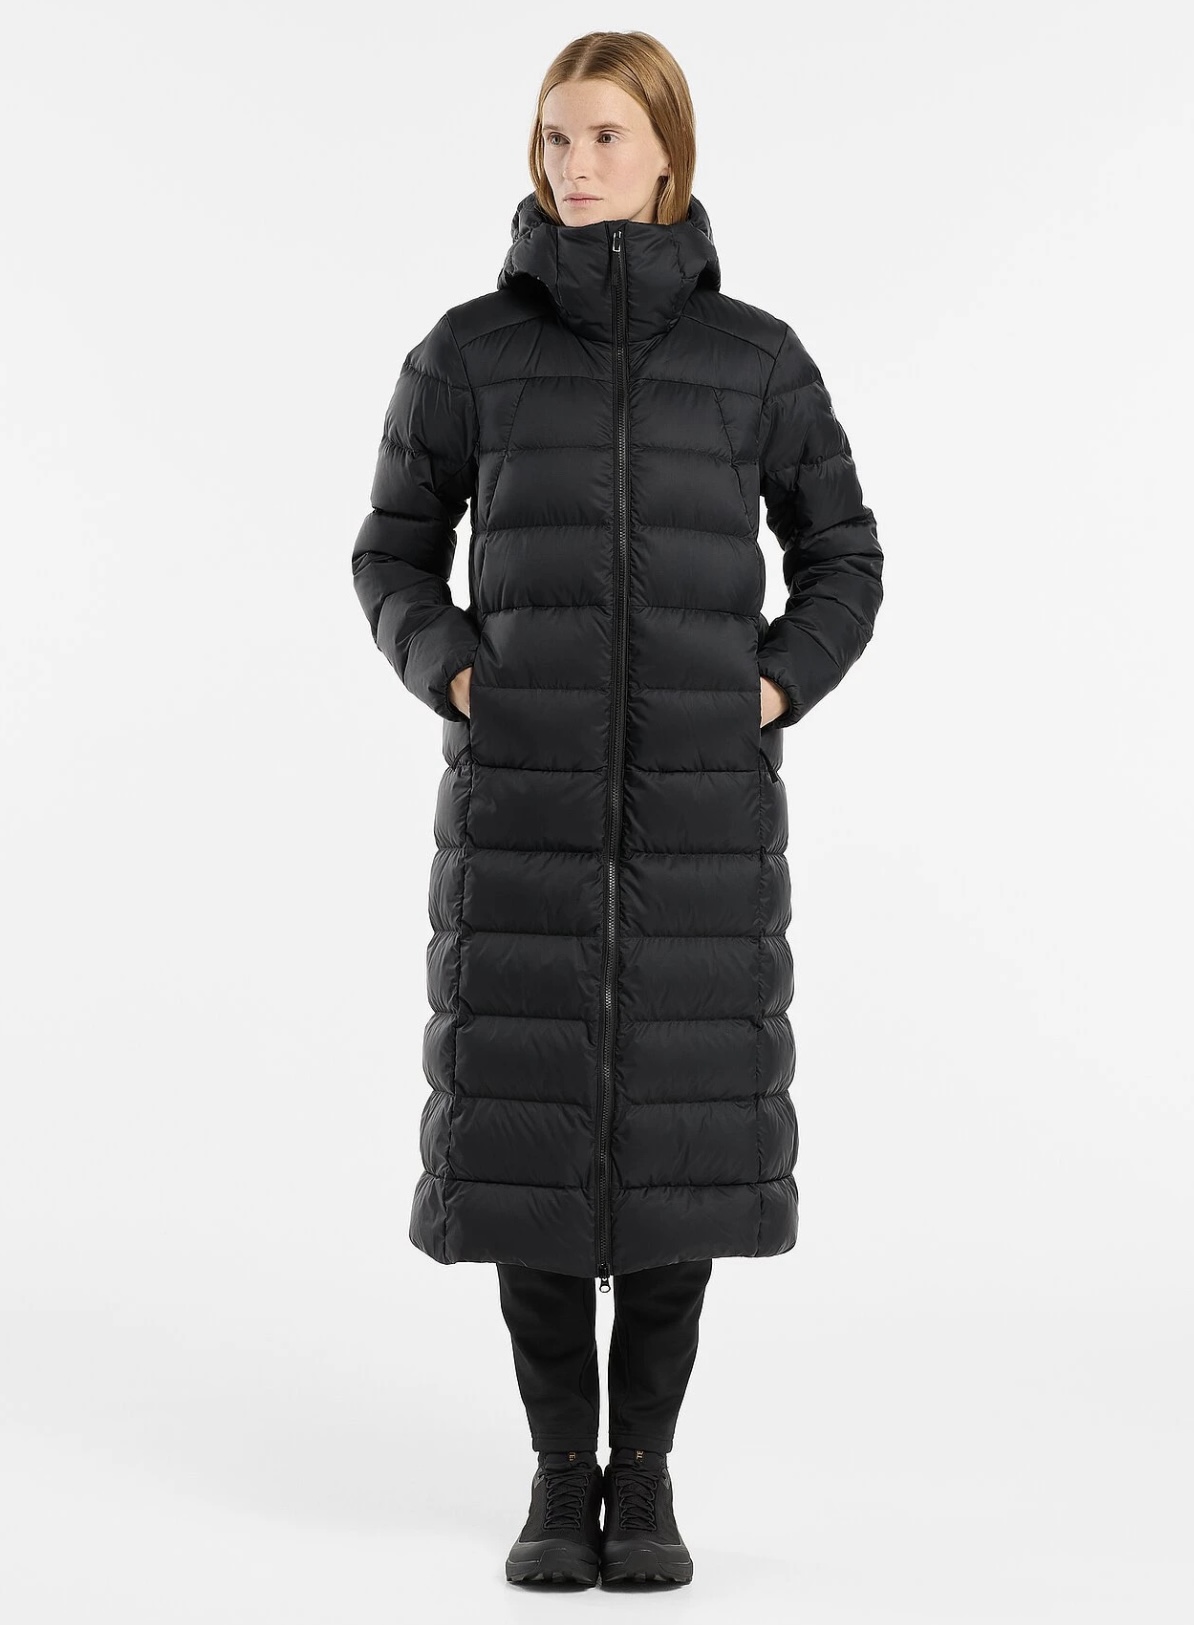 Woman wearing a long black puffer coat